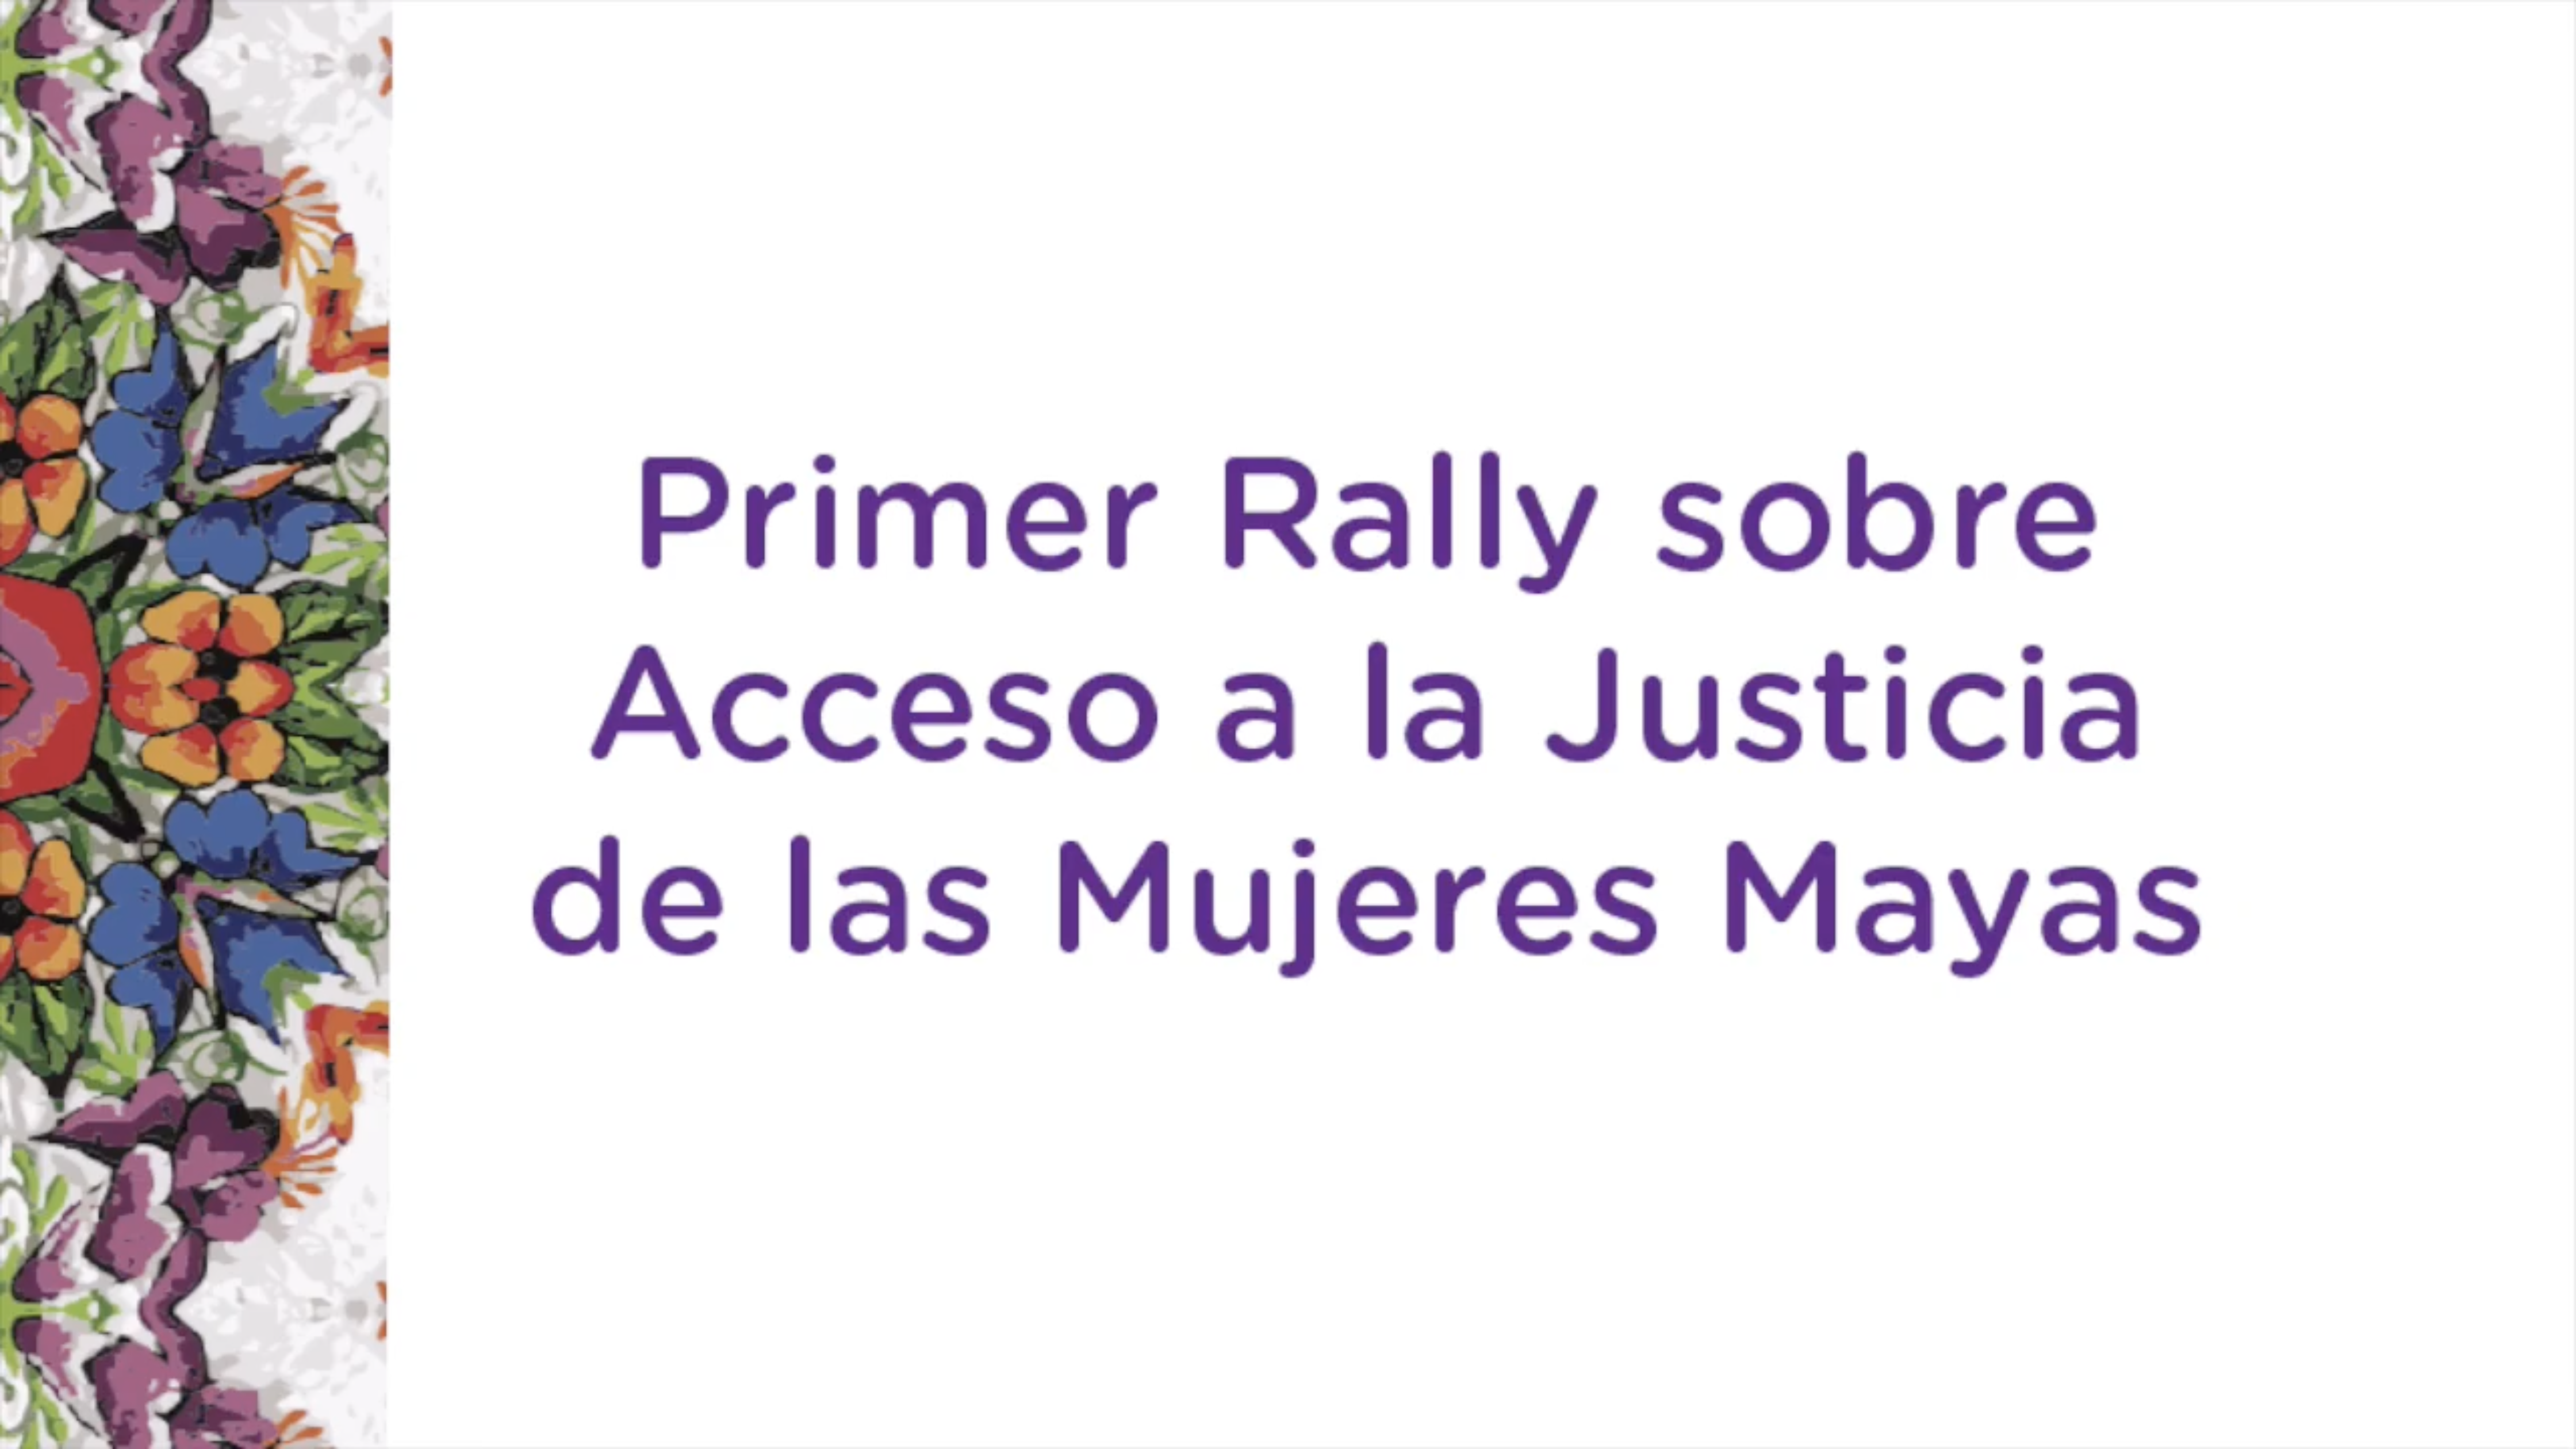 Primer rally sobre acceso a la justicia de mujeres mayas